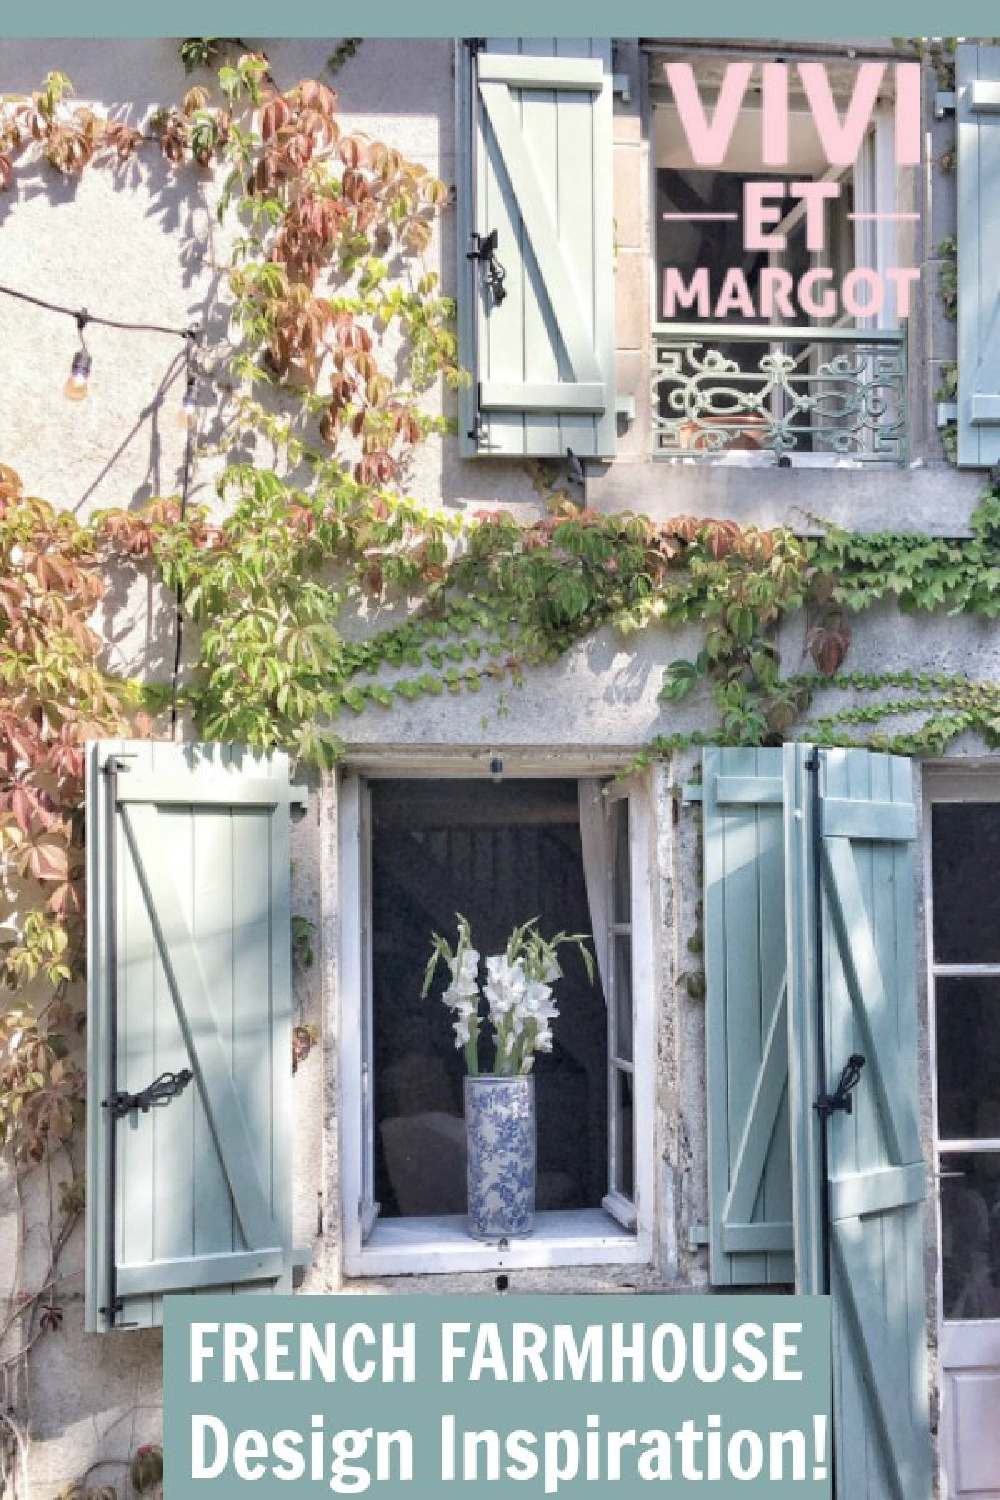 French farmhouse design inspiration from Vivi et Margot on Hello Lovely. #vivietmargot #hellolovelystudio #frenchfarmhouse #housetour #designinspiration #frenchcountry